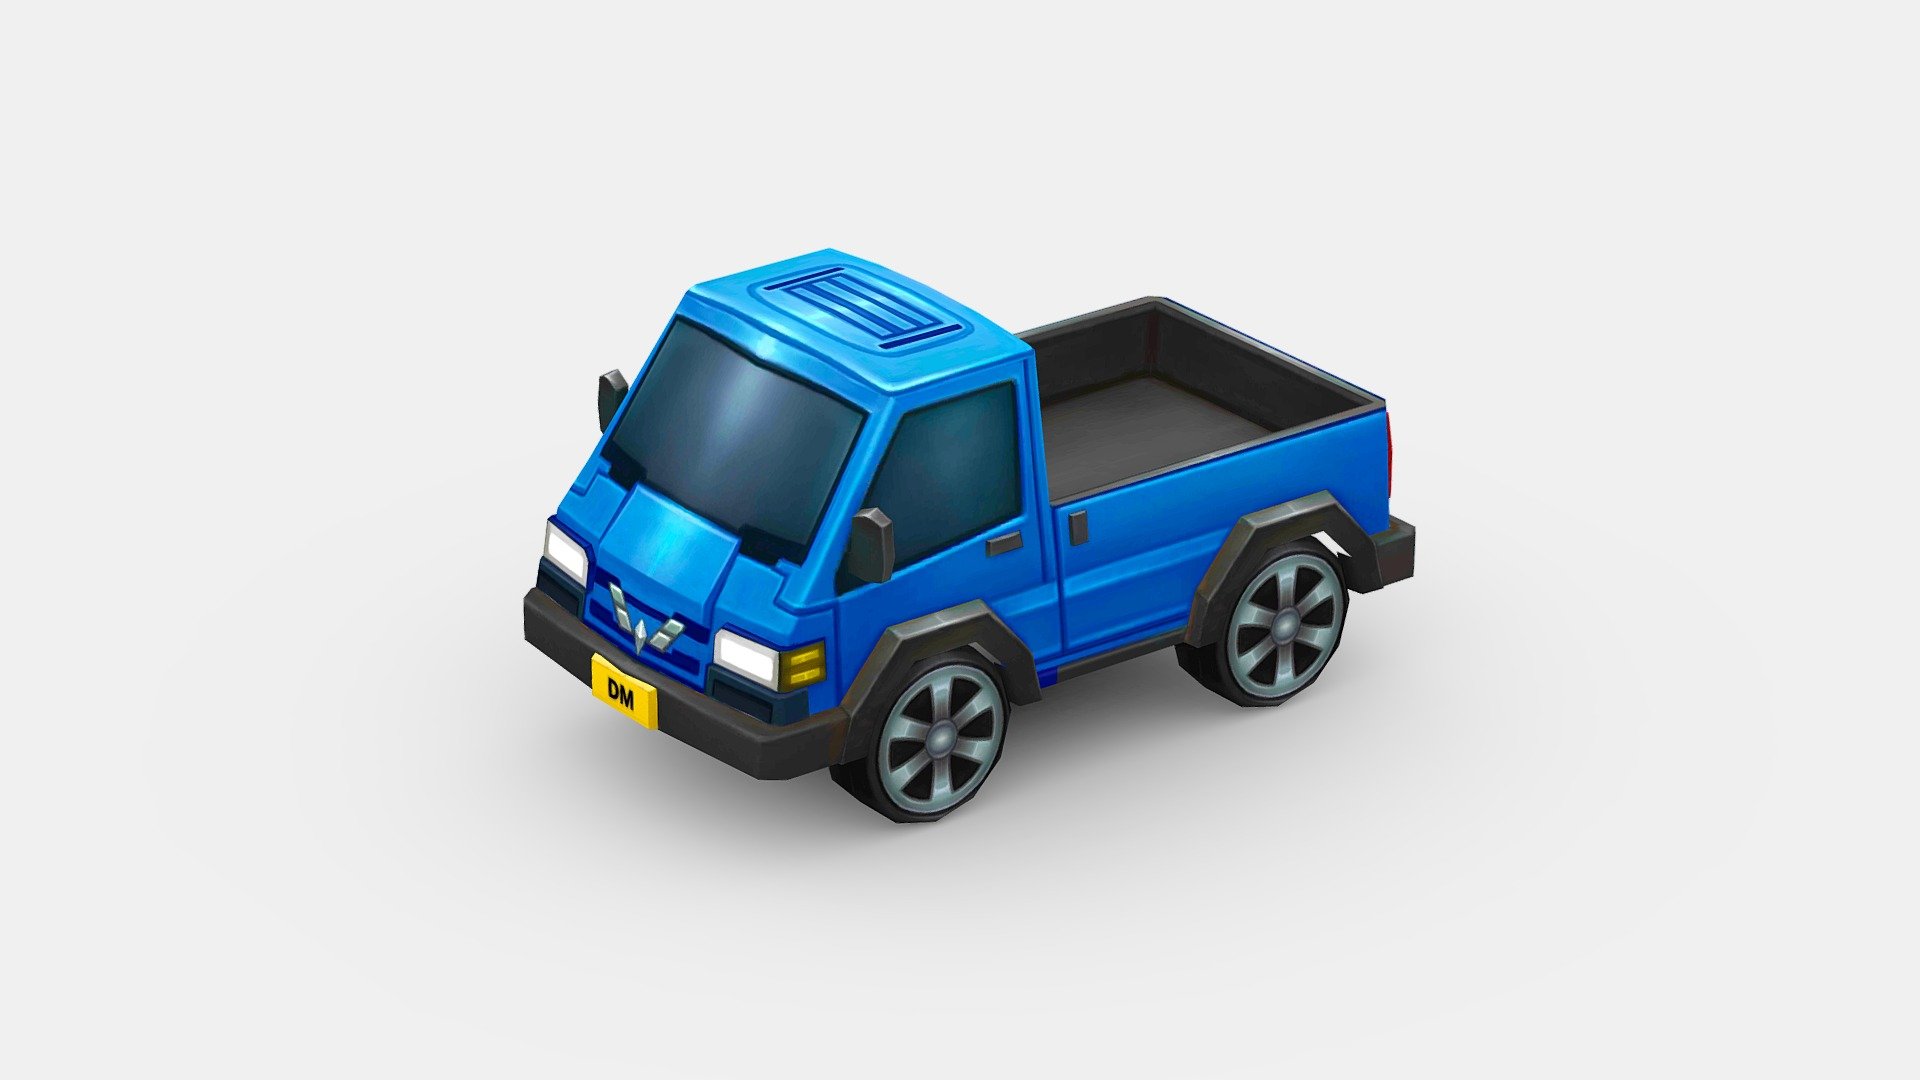 File contains : 2 Texture + 1 Model

Texture1= blue

Texture2= green - Cartoon light truck cart - Buy Royalty Free 3D model by ler_cartoon (@lerrrrr) 3d model